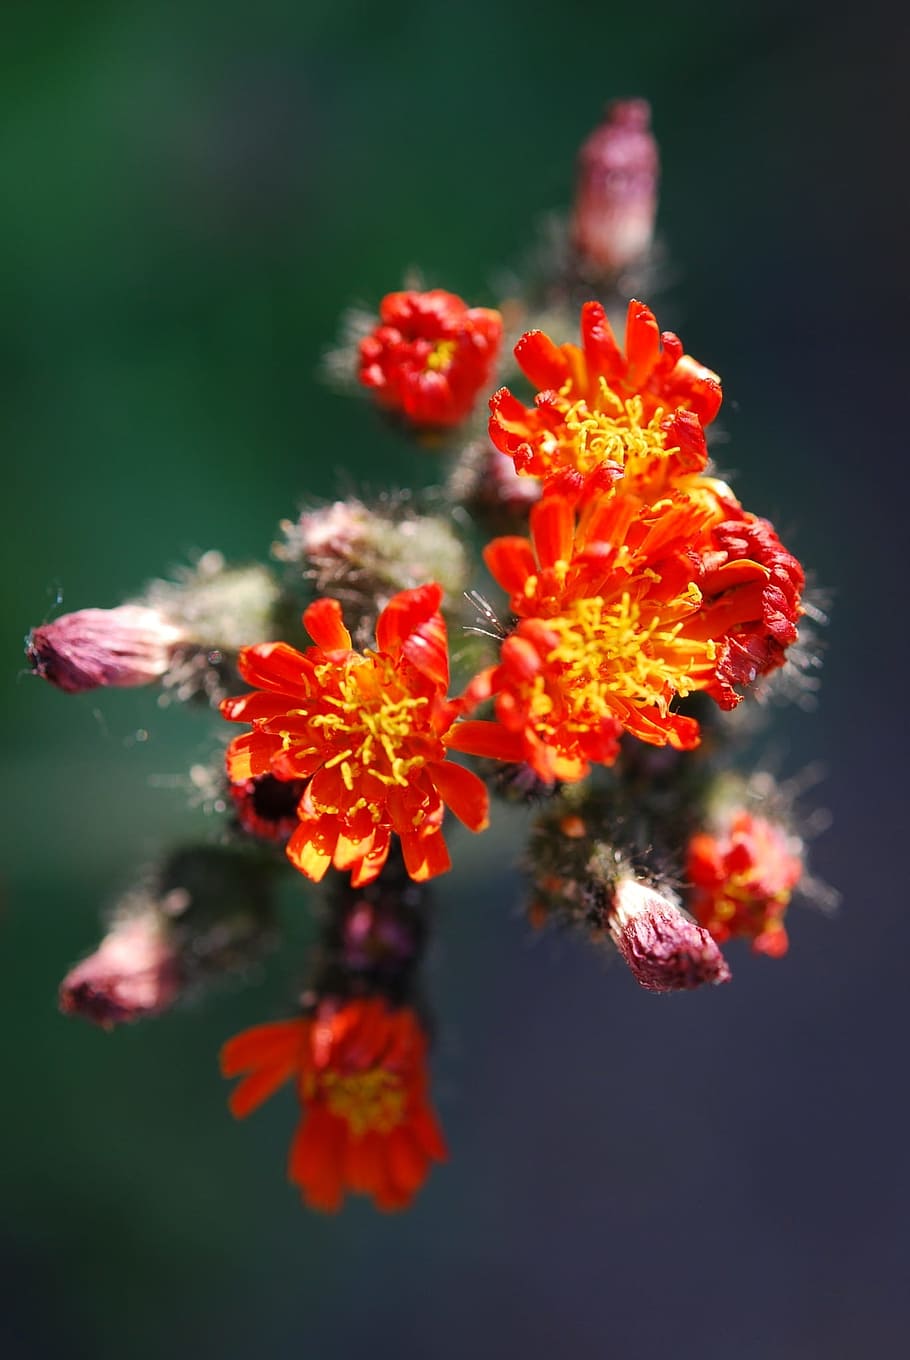 Asteracea, Flower, Blossom, Bloom, orange, red, отличительный, рост, хрупкость, красота в природе